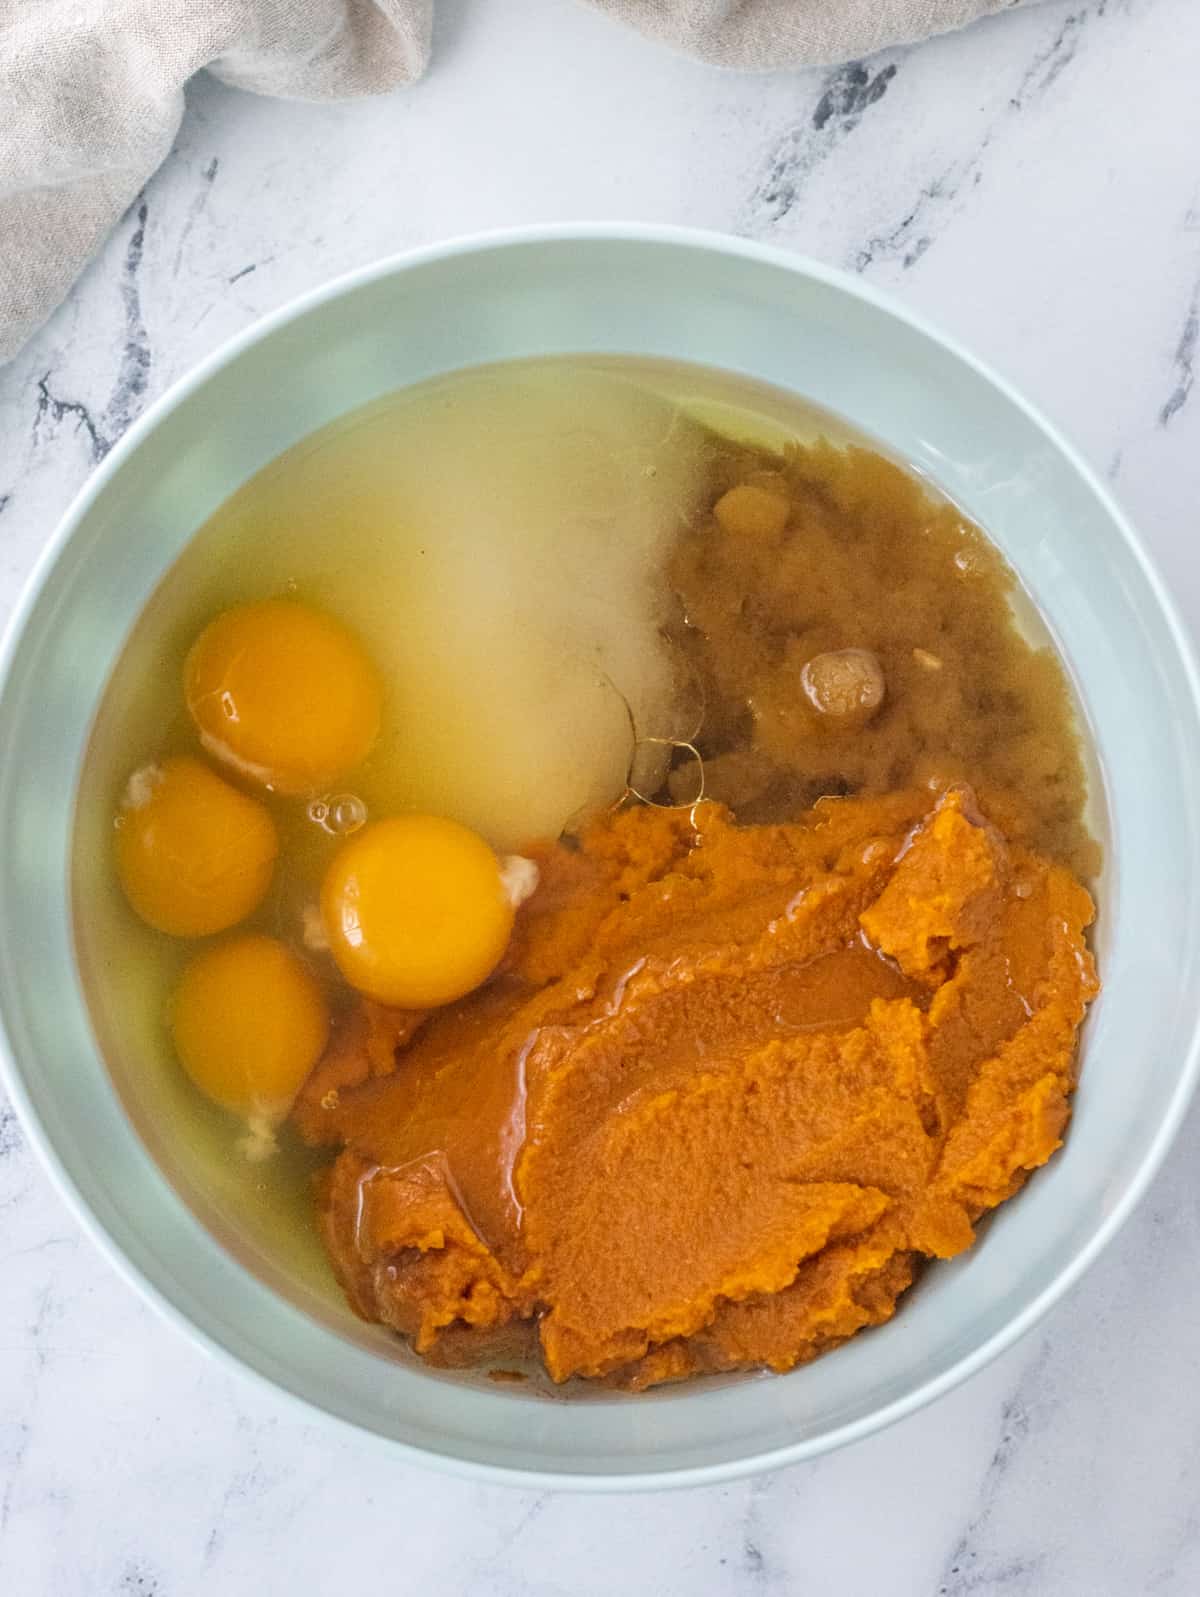 Sugar, brown sugar, pumpkin purée, four eggs, and oil in a bowl.